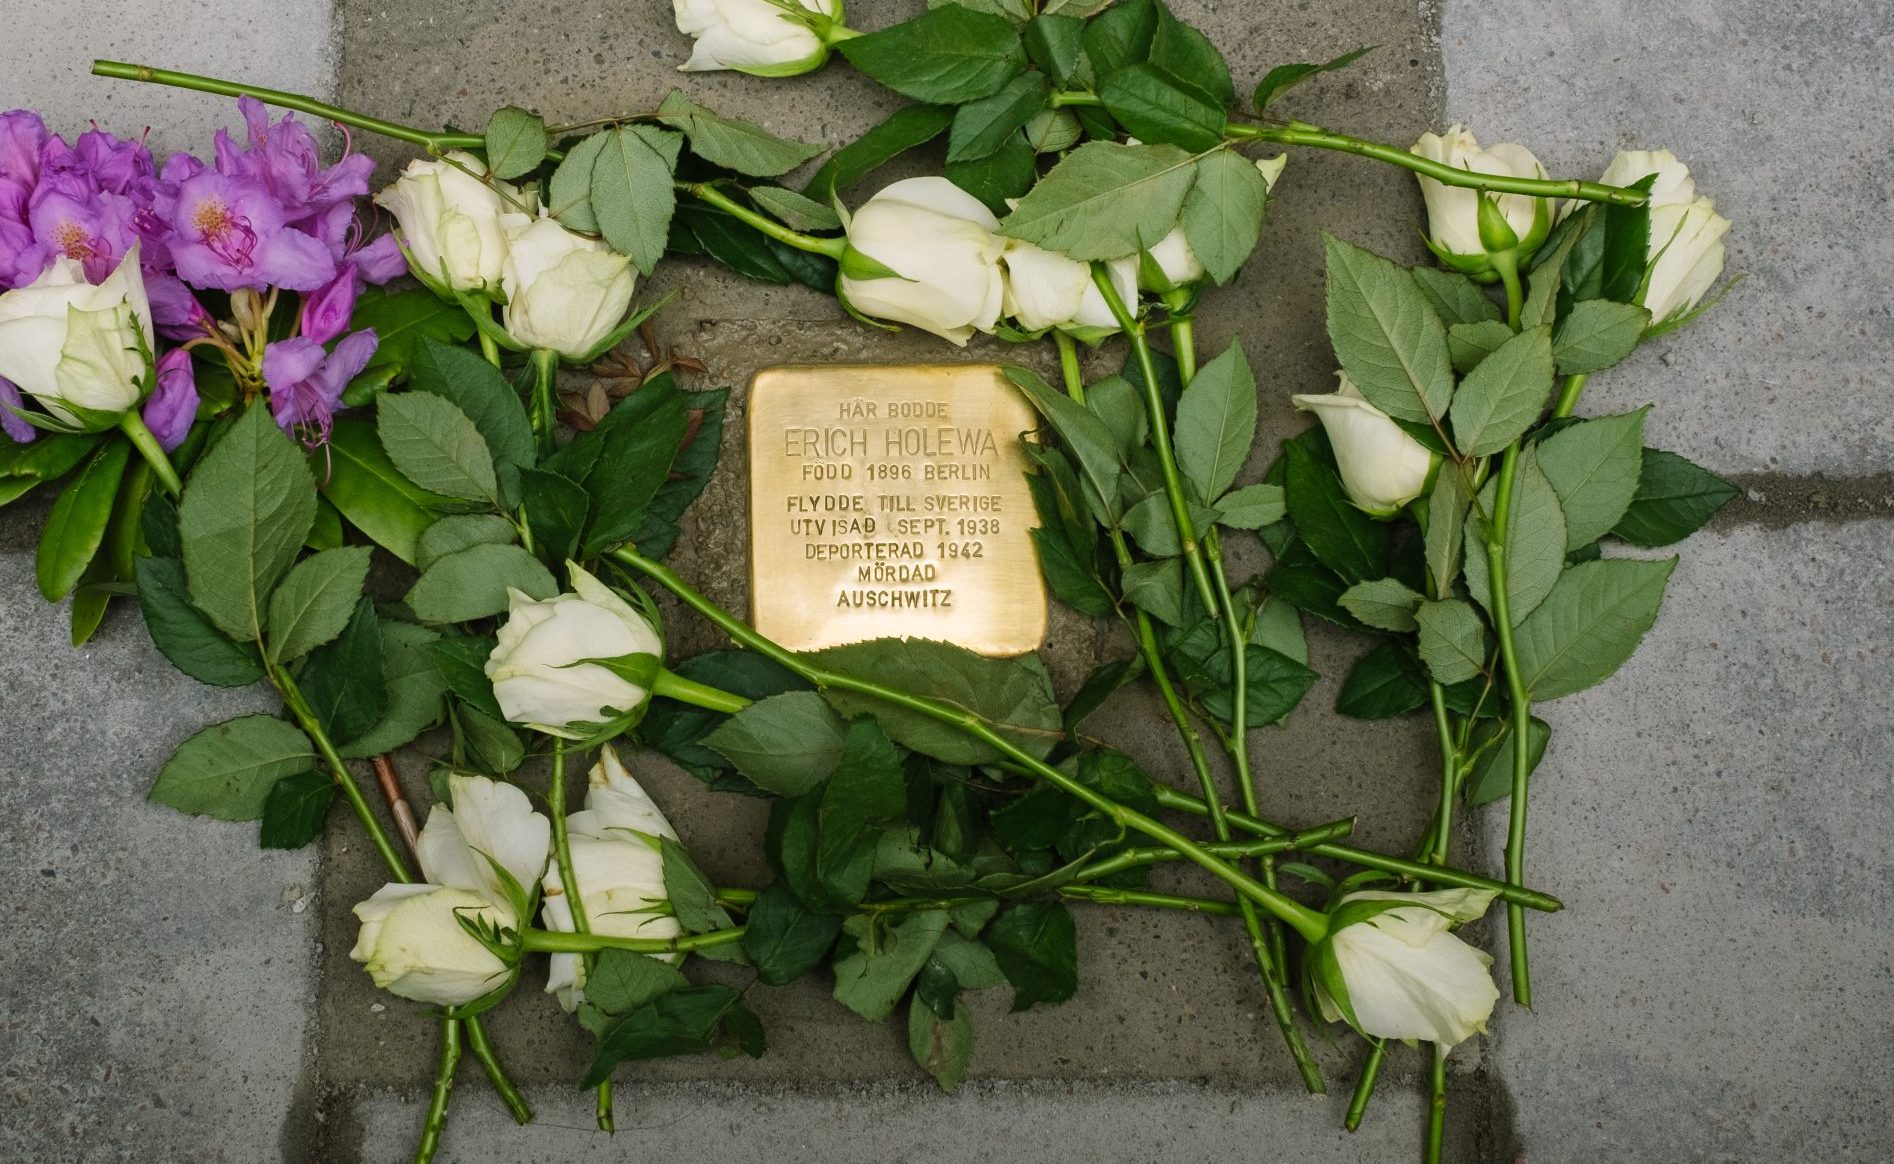 En mässingsfärgad metallplatta är nedsänkt mellan stenplattor på marken. På plattan står "Här bodde Erich Holewa, född 1896 Berlin. Flydde till Sverige. Utvisad sept. 1938. Deporterad 1942. Mördad Auschwitz". Runt plattan ligger blommor.